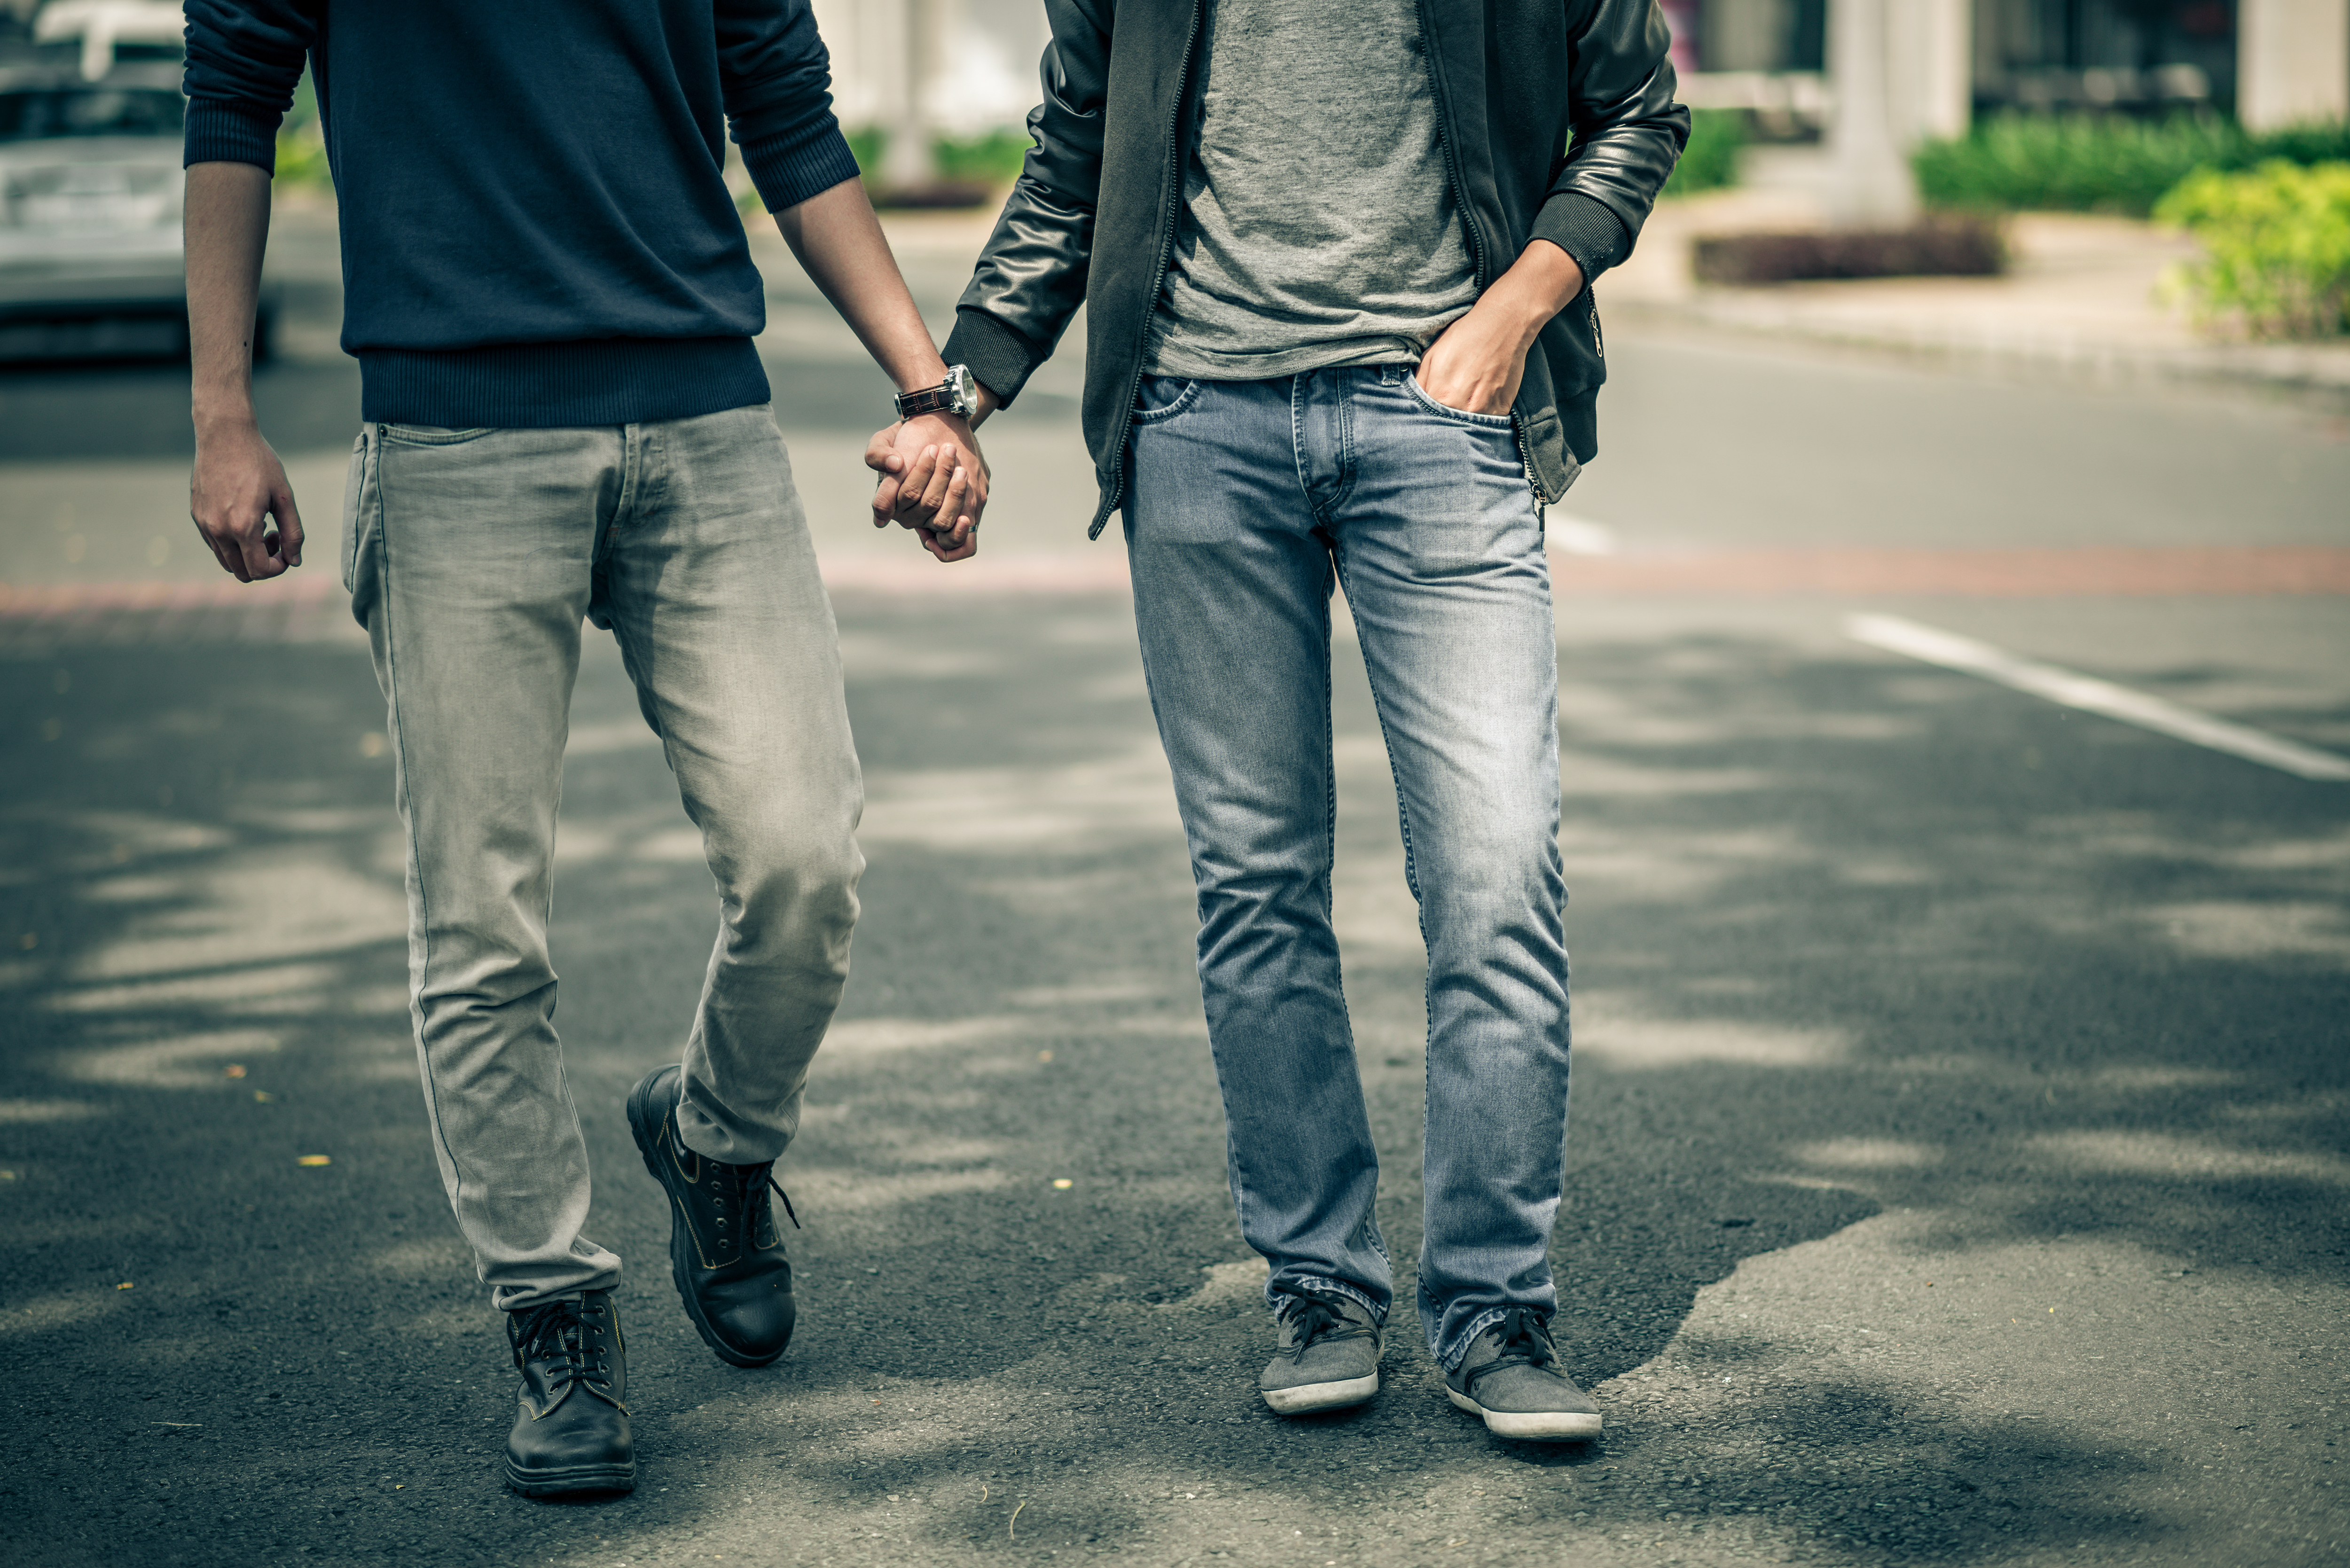 Un couple qui marche en se tenant par la main | Source : Shutterstock